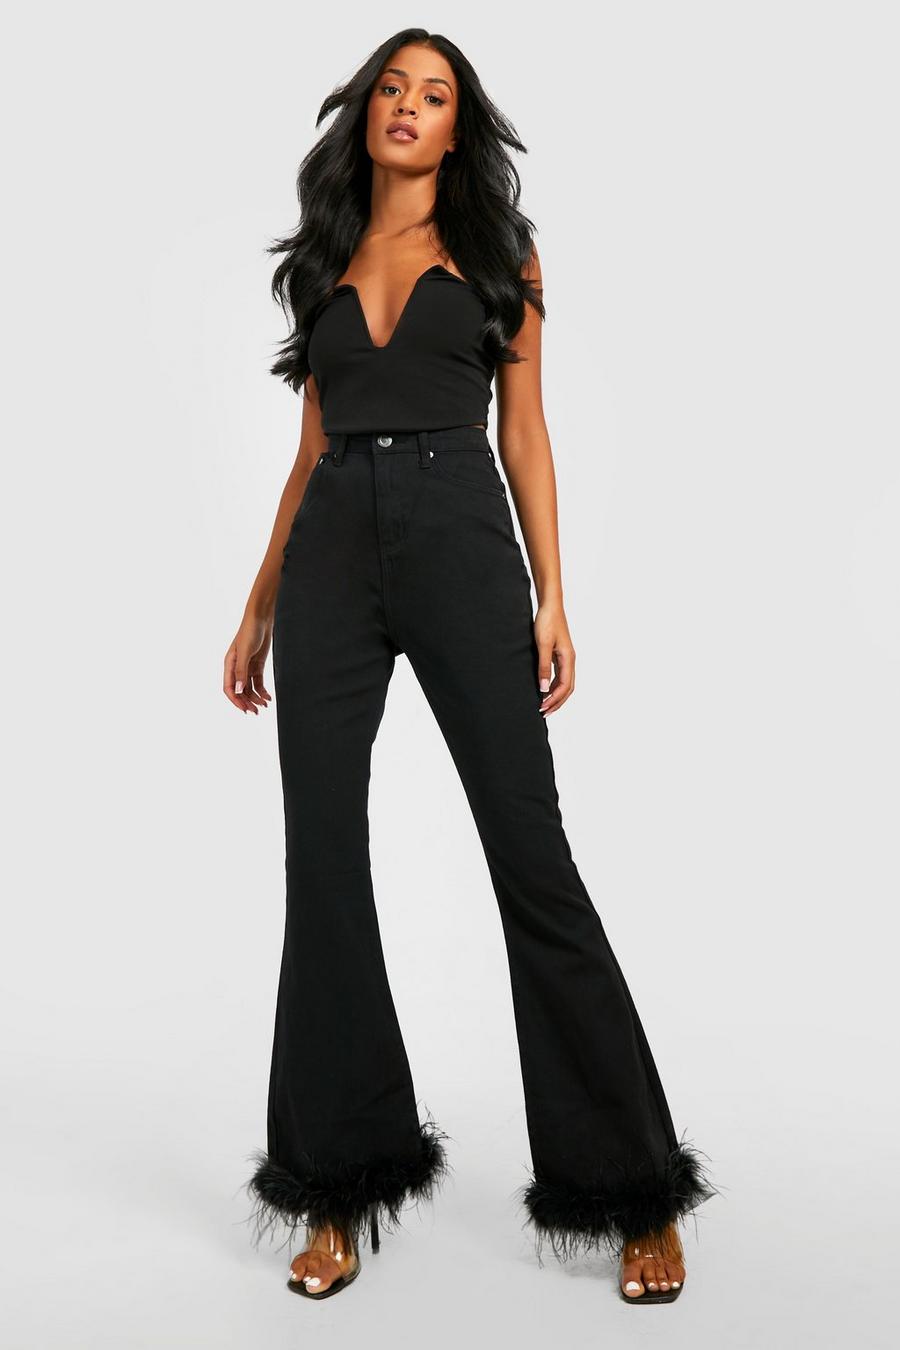 שחור מכנסי ג'ינס מתרחבים עם גימור נוצות, לנשים גבוהות image number 1